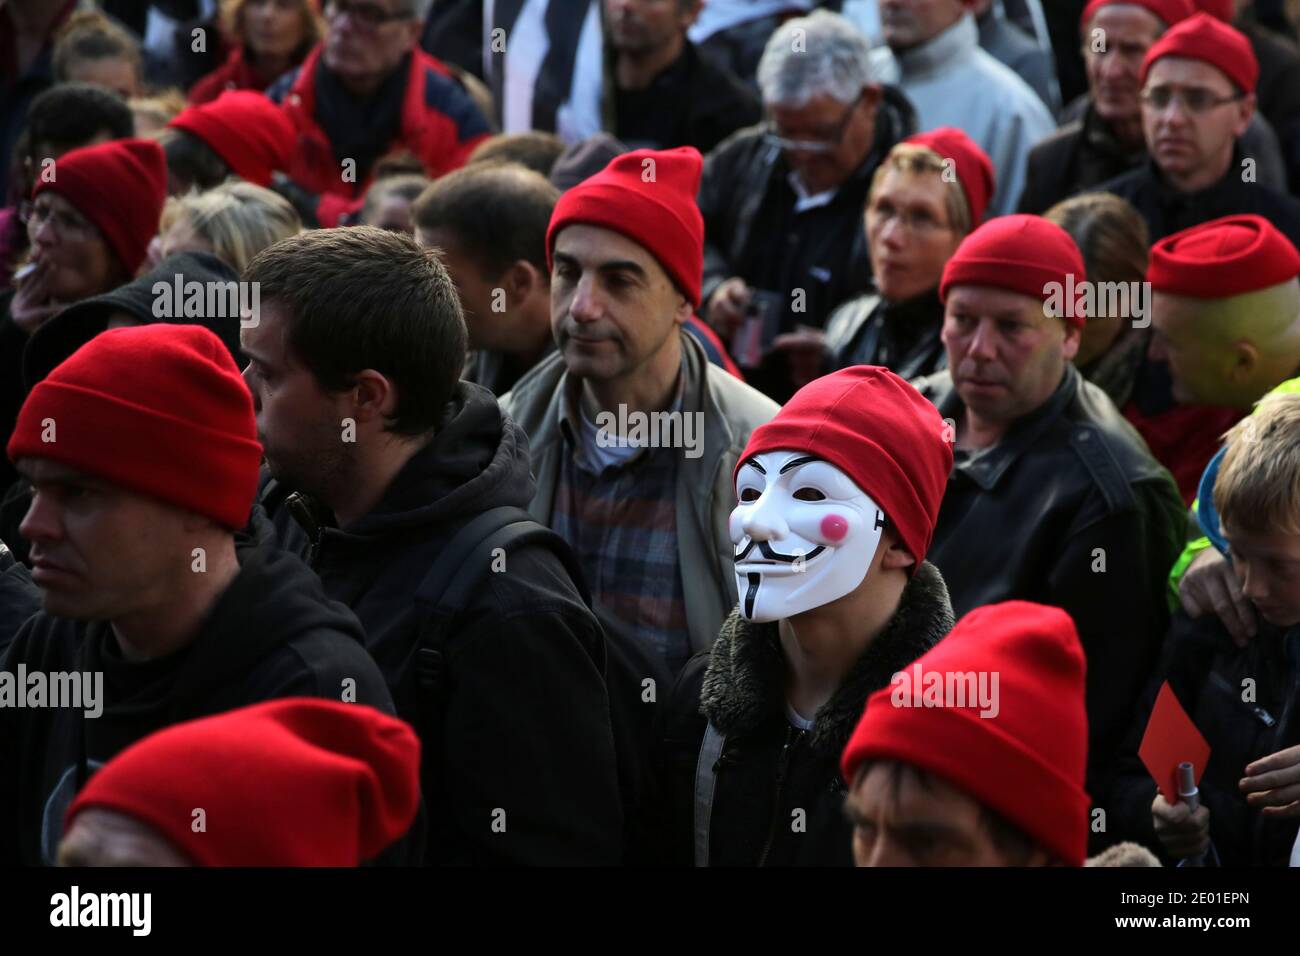 Les manifestants portant des bonnets rouges et portant le drapeau breton  manifestent contre les pertes d'emplois et contre l'écotaxe du  gouvernement, une taxe environnementale controversée sur les poids lourds,  à Carhaix-Plouguer, dans